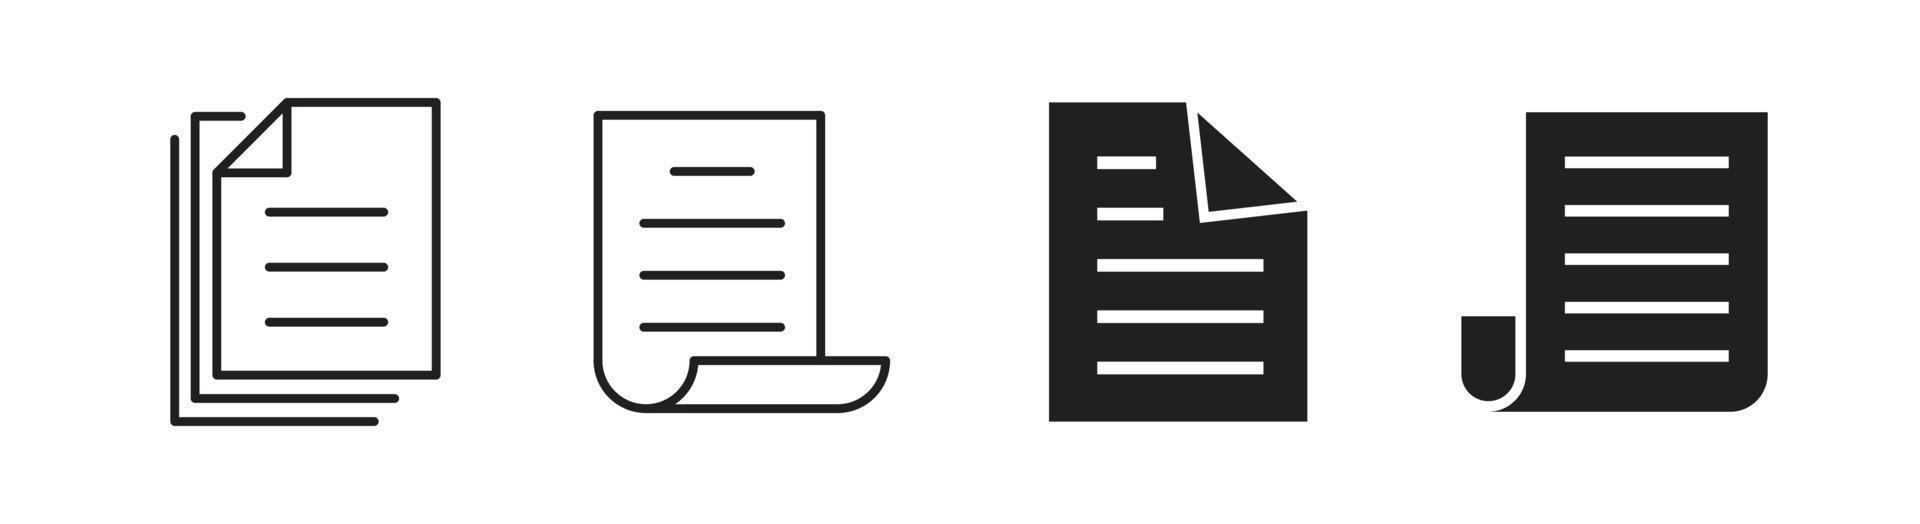 elemento de design de ícone de documento adequado para sites, design de impressão ou aplicativo vetor